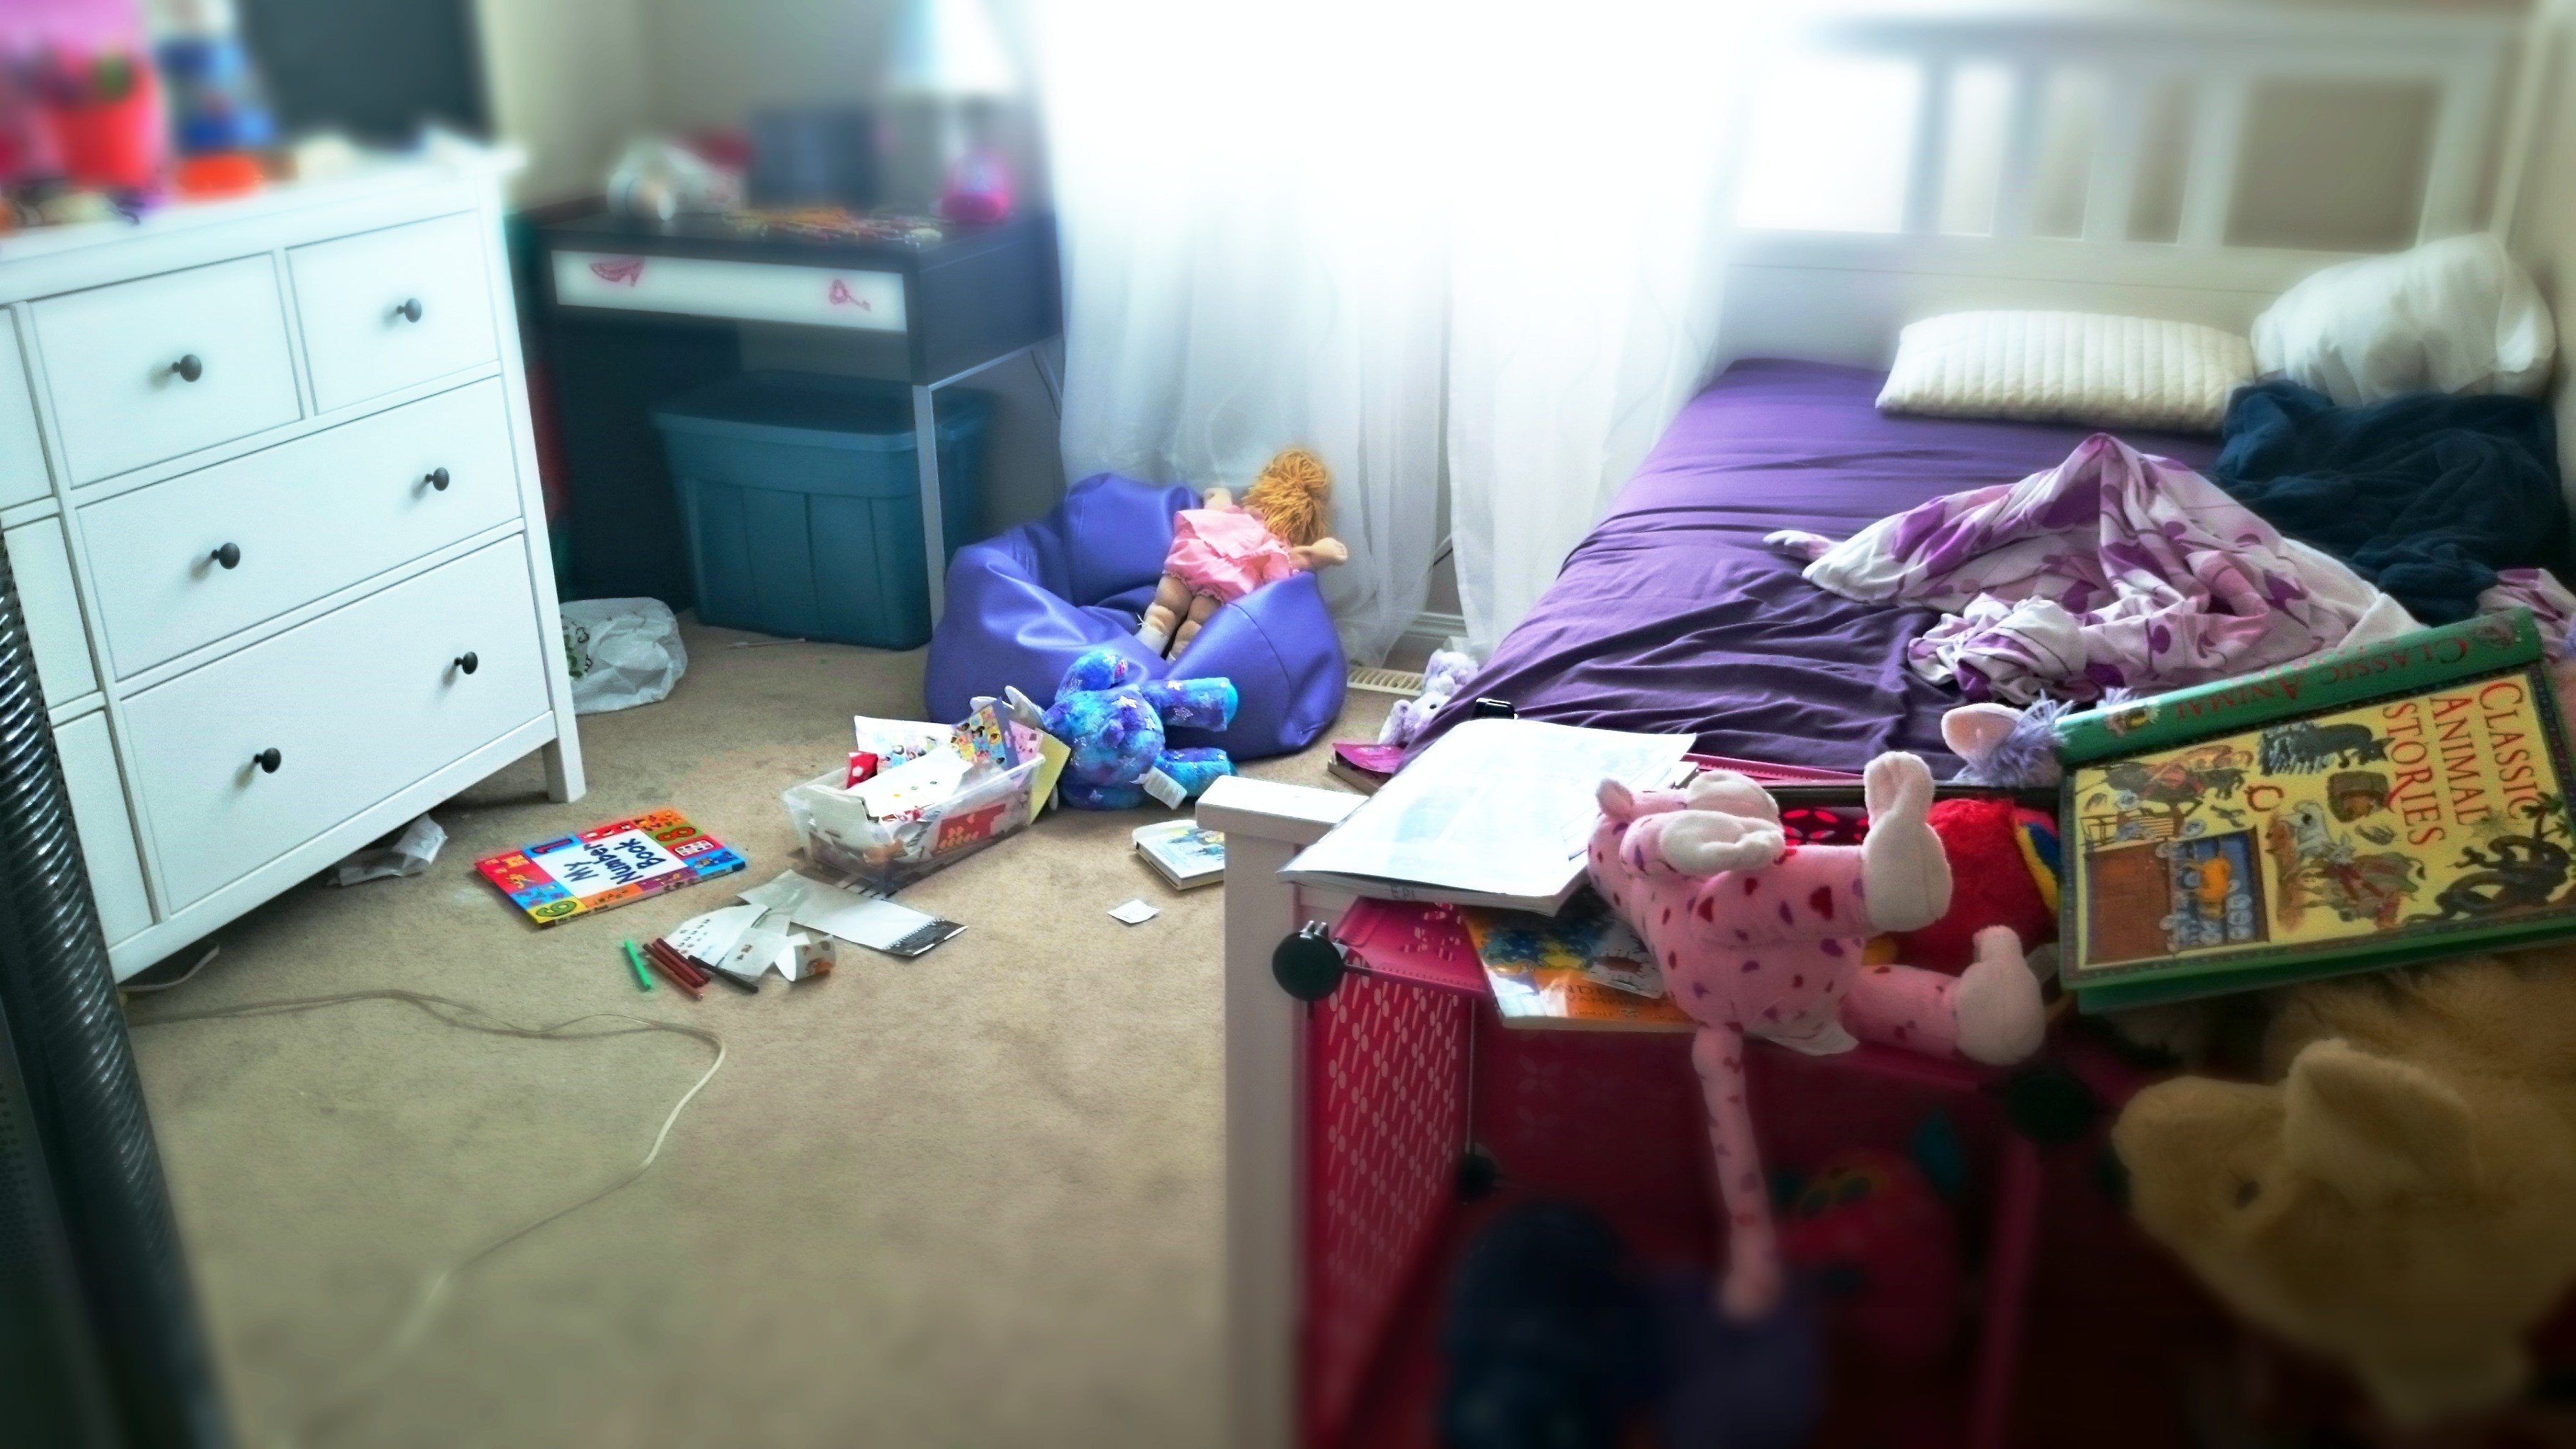 Tidies his room. Разбросанные вещи. Разбросанные игрушки. Бардак в детской. Небольшой беспорядок в комнате.